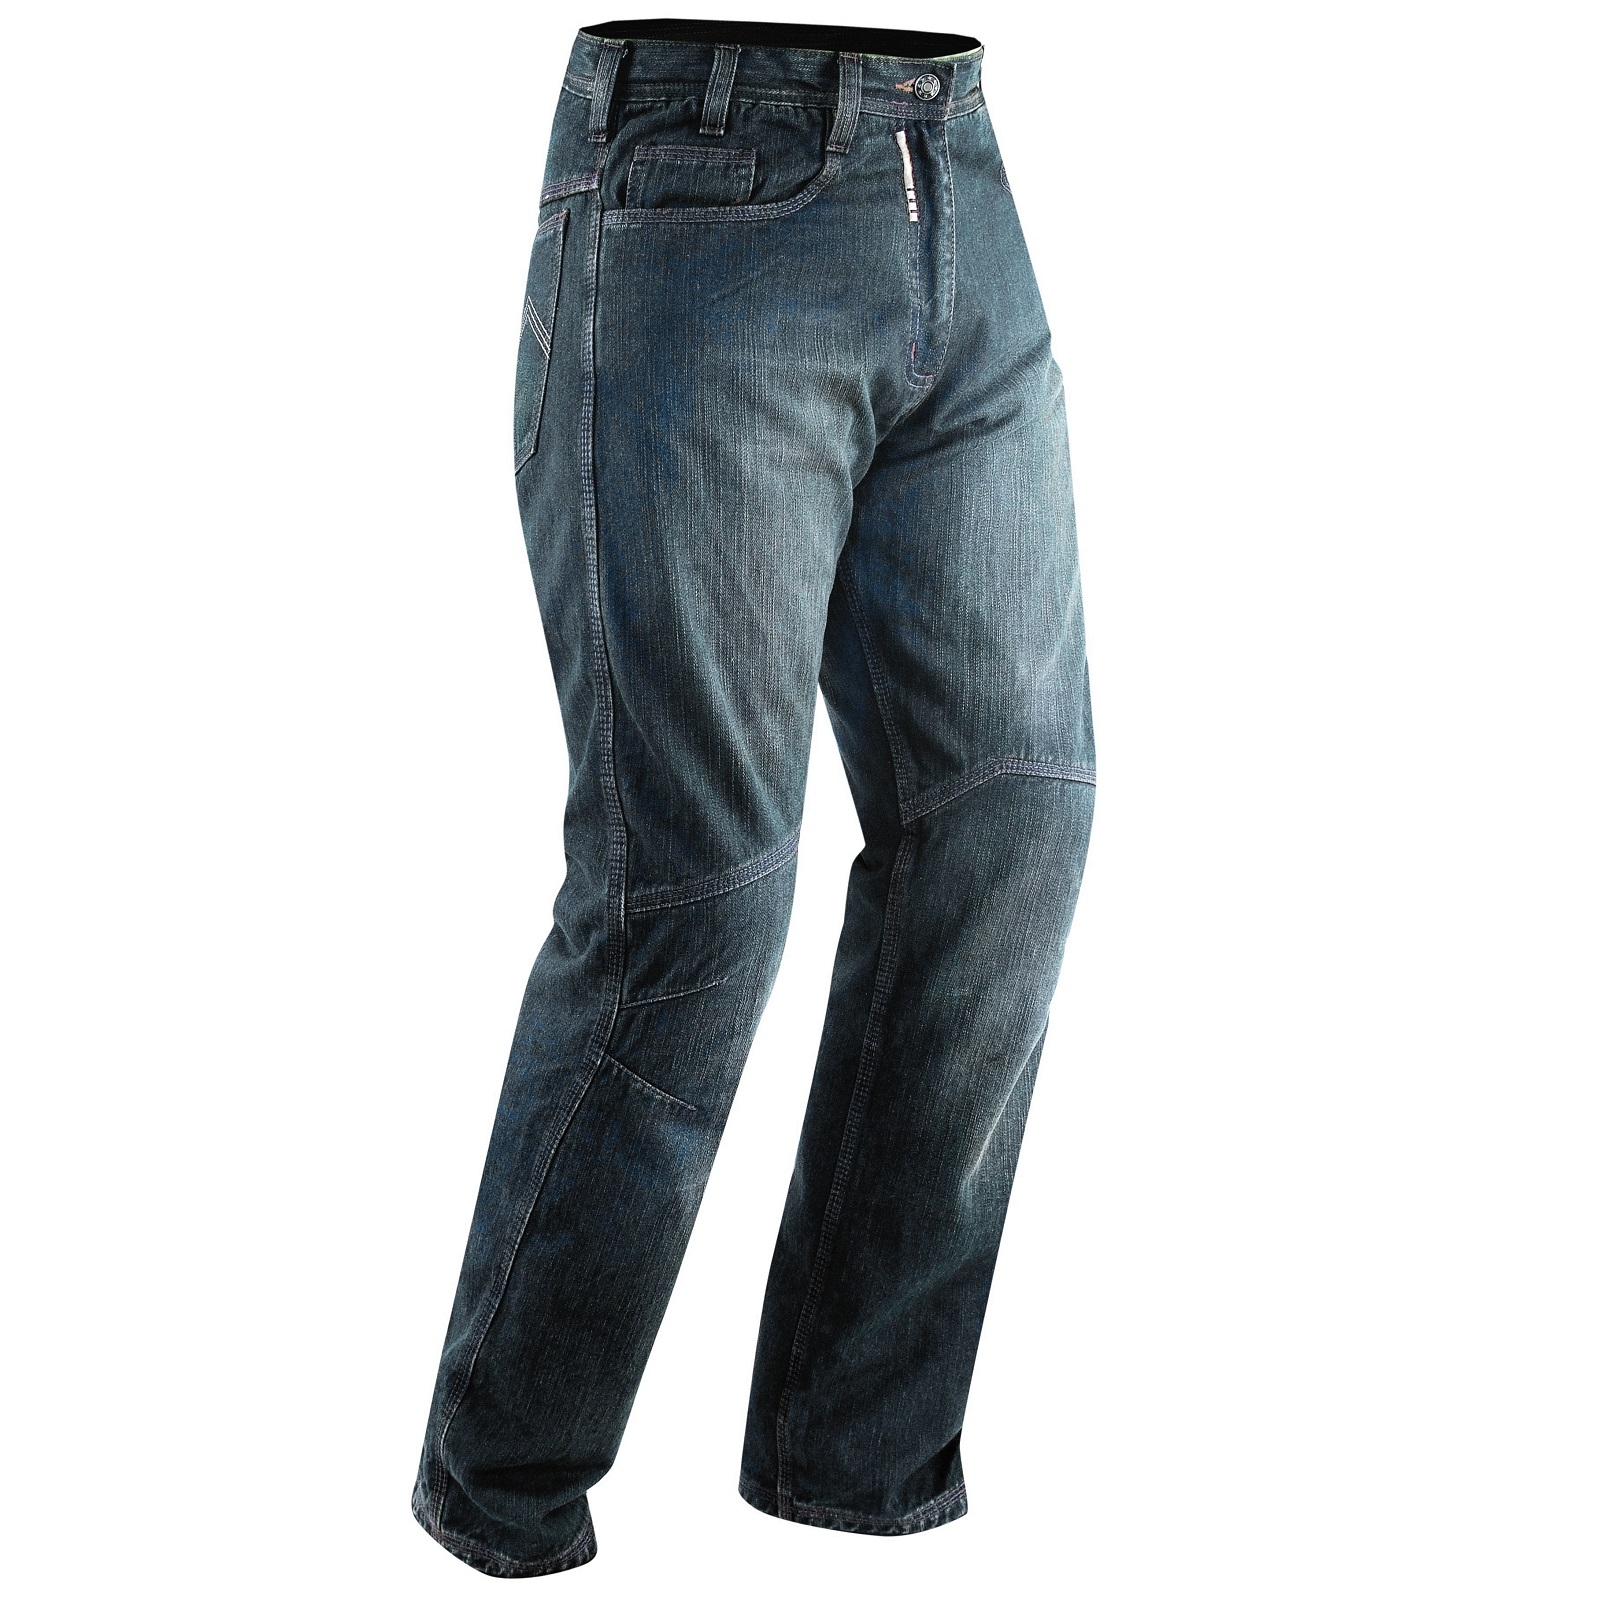 Abbigliamento Moto e Accessori - Jeans Moto Pantaloni Protecioni Omologate  CE Ginocchia Rinforzi Fianchi Blu